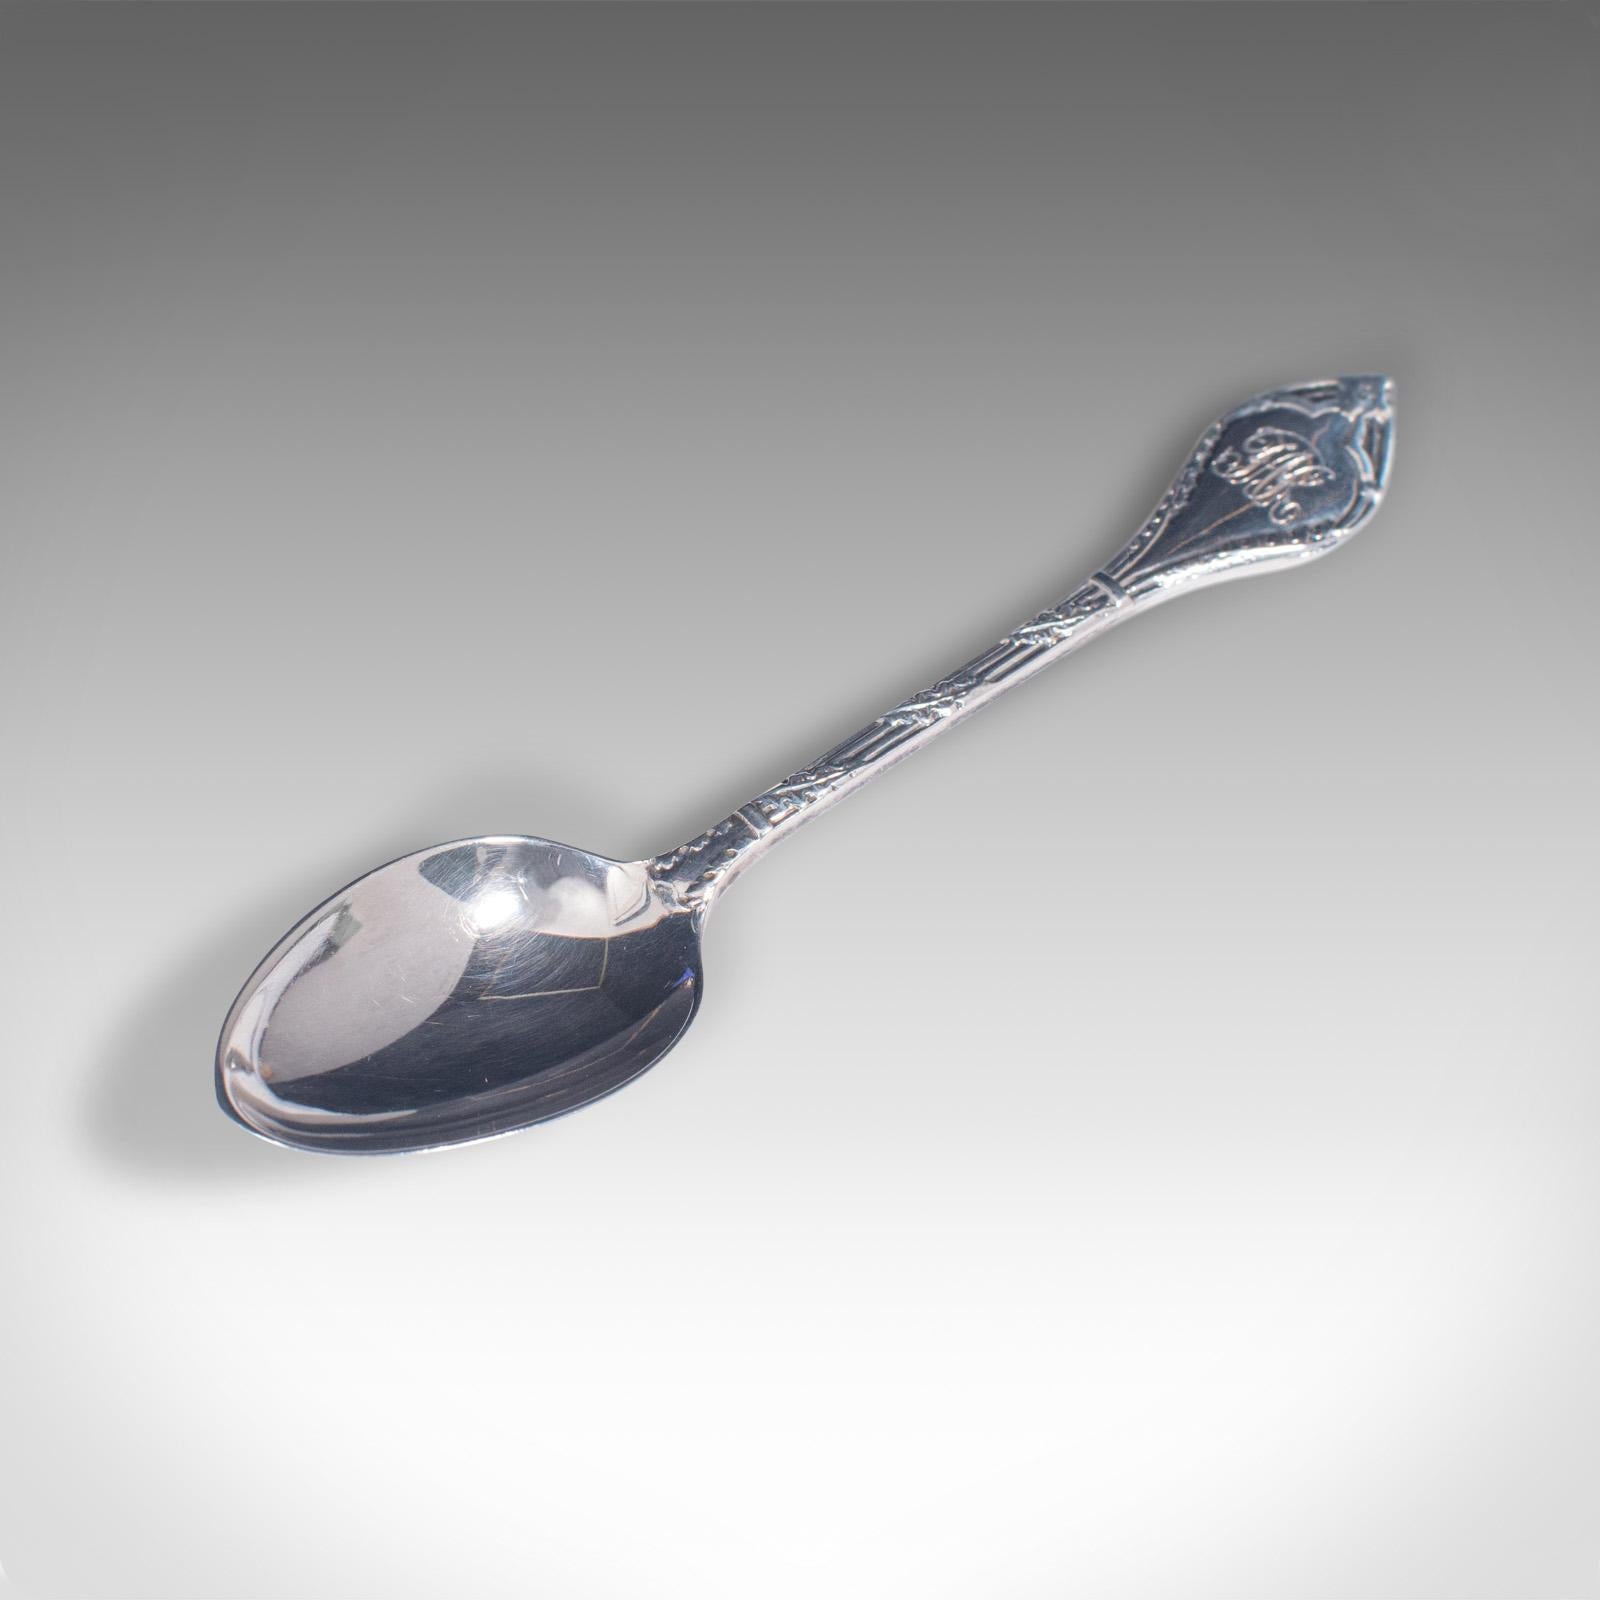 dixon silver spoon hallmarks